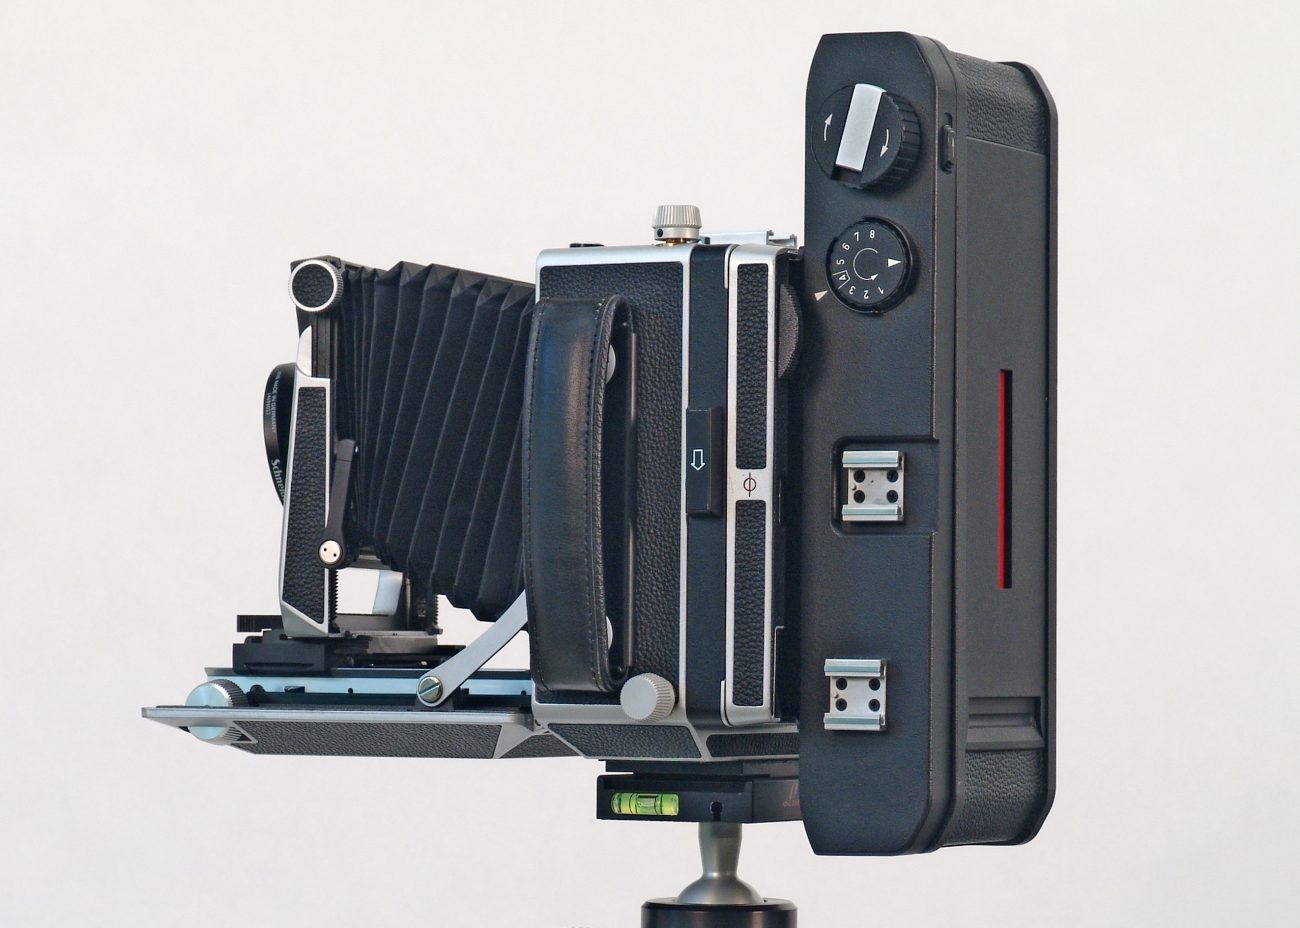 Linhof Precision Cameras made in Munich